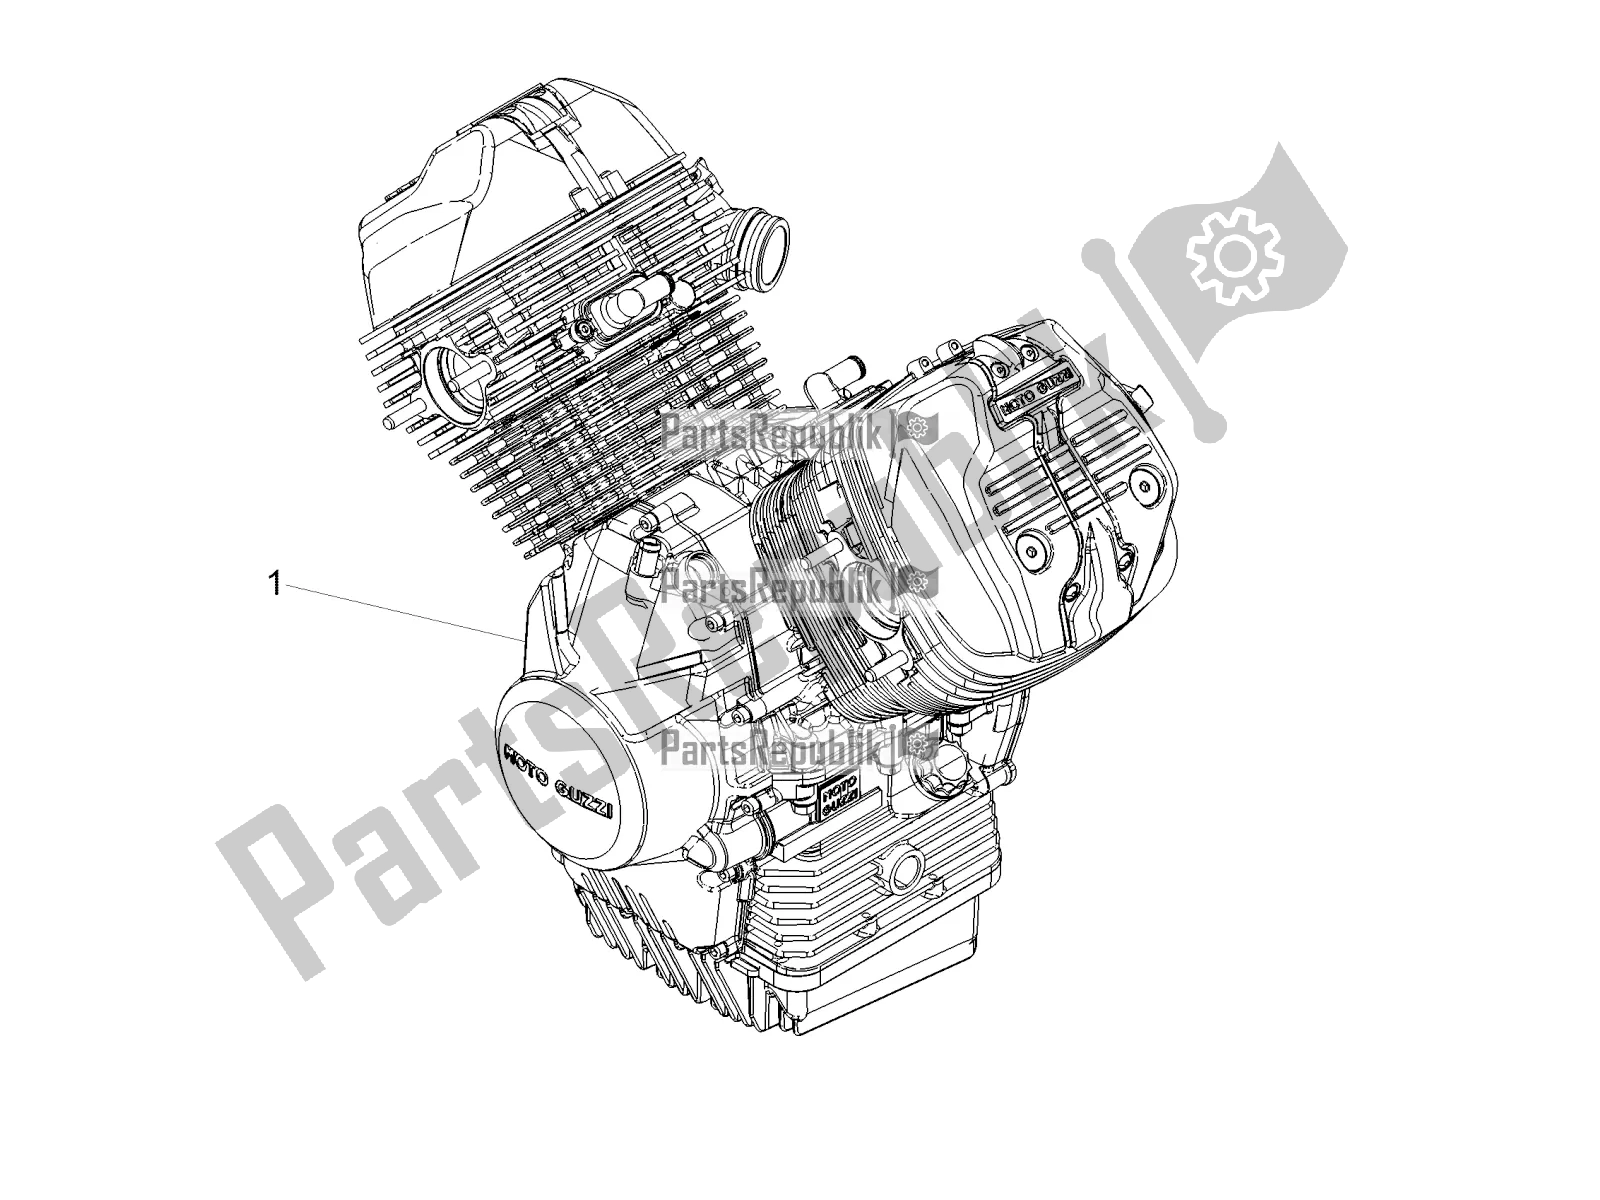 Tutte le parti per il Leva Parziale Per Il Completamento Del Motore del Moto-Guzzi V7 III Carbon Shine 750 2019